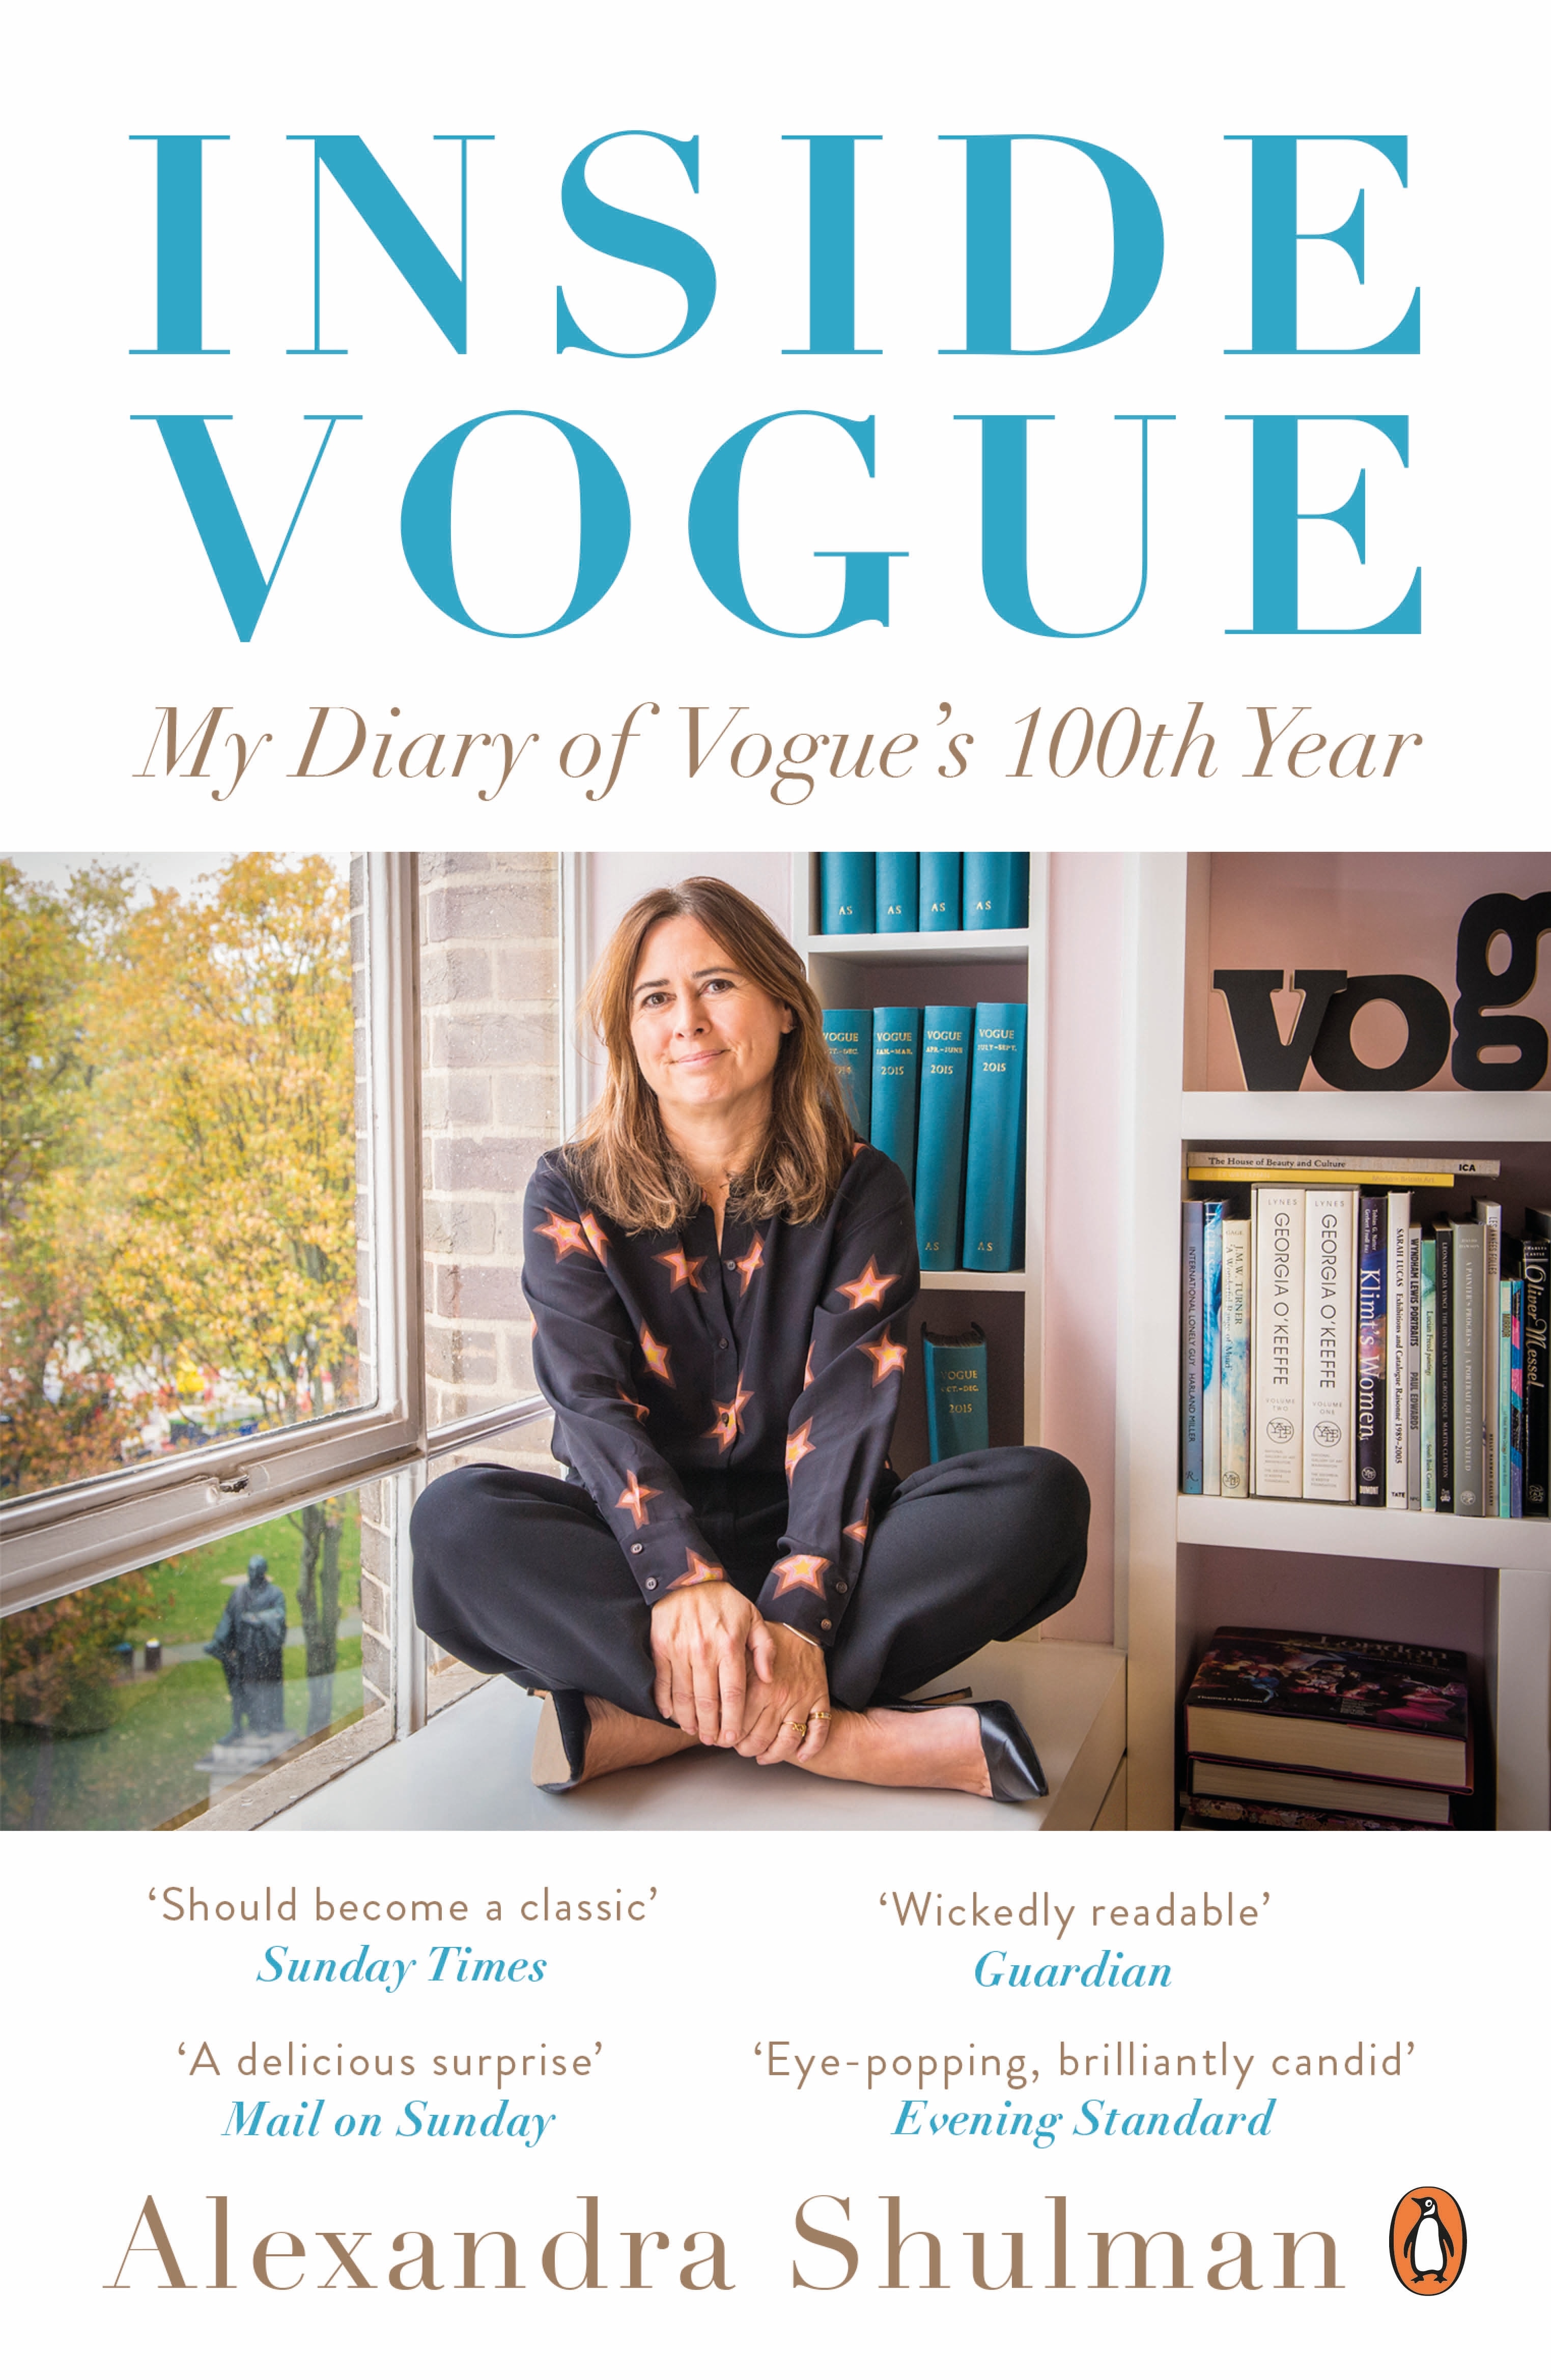 Book “Inside Vogue” by Alexandra Shulman — June 1, 2017